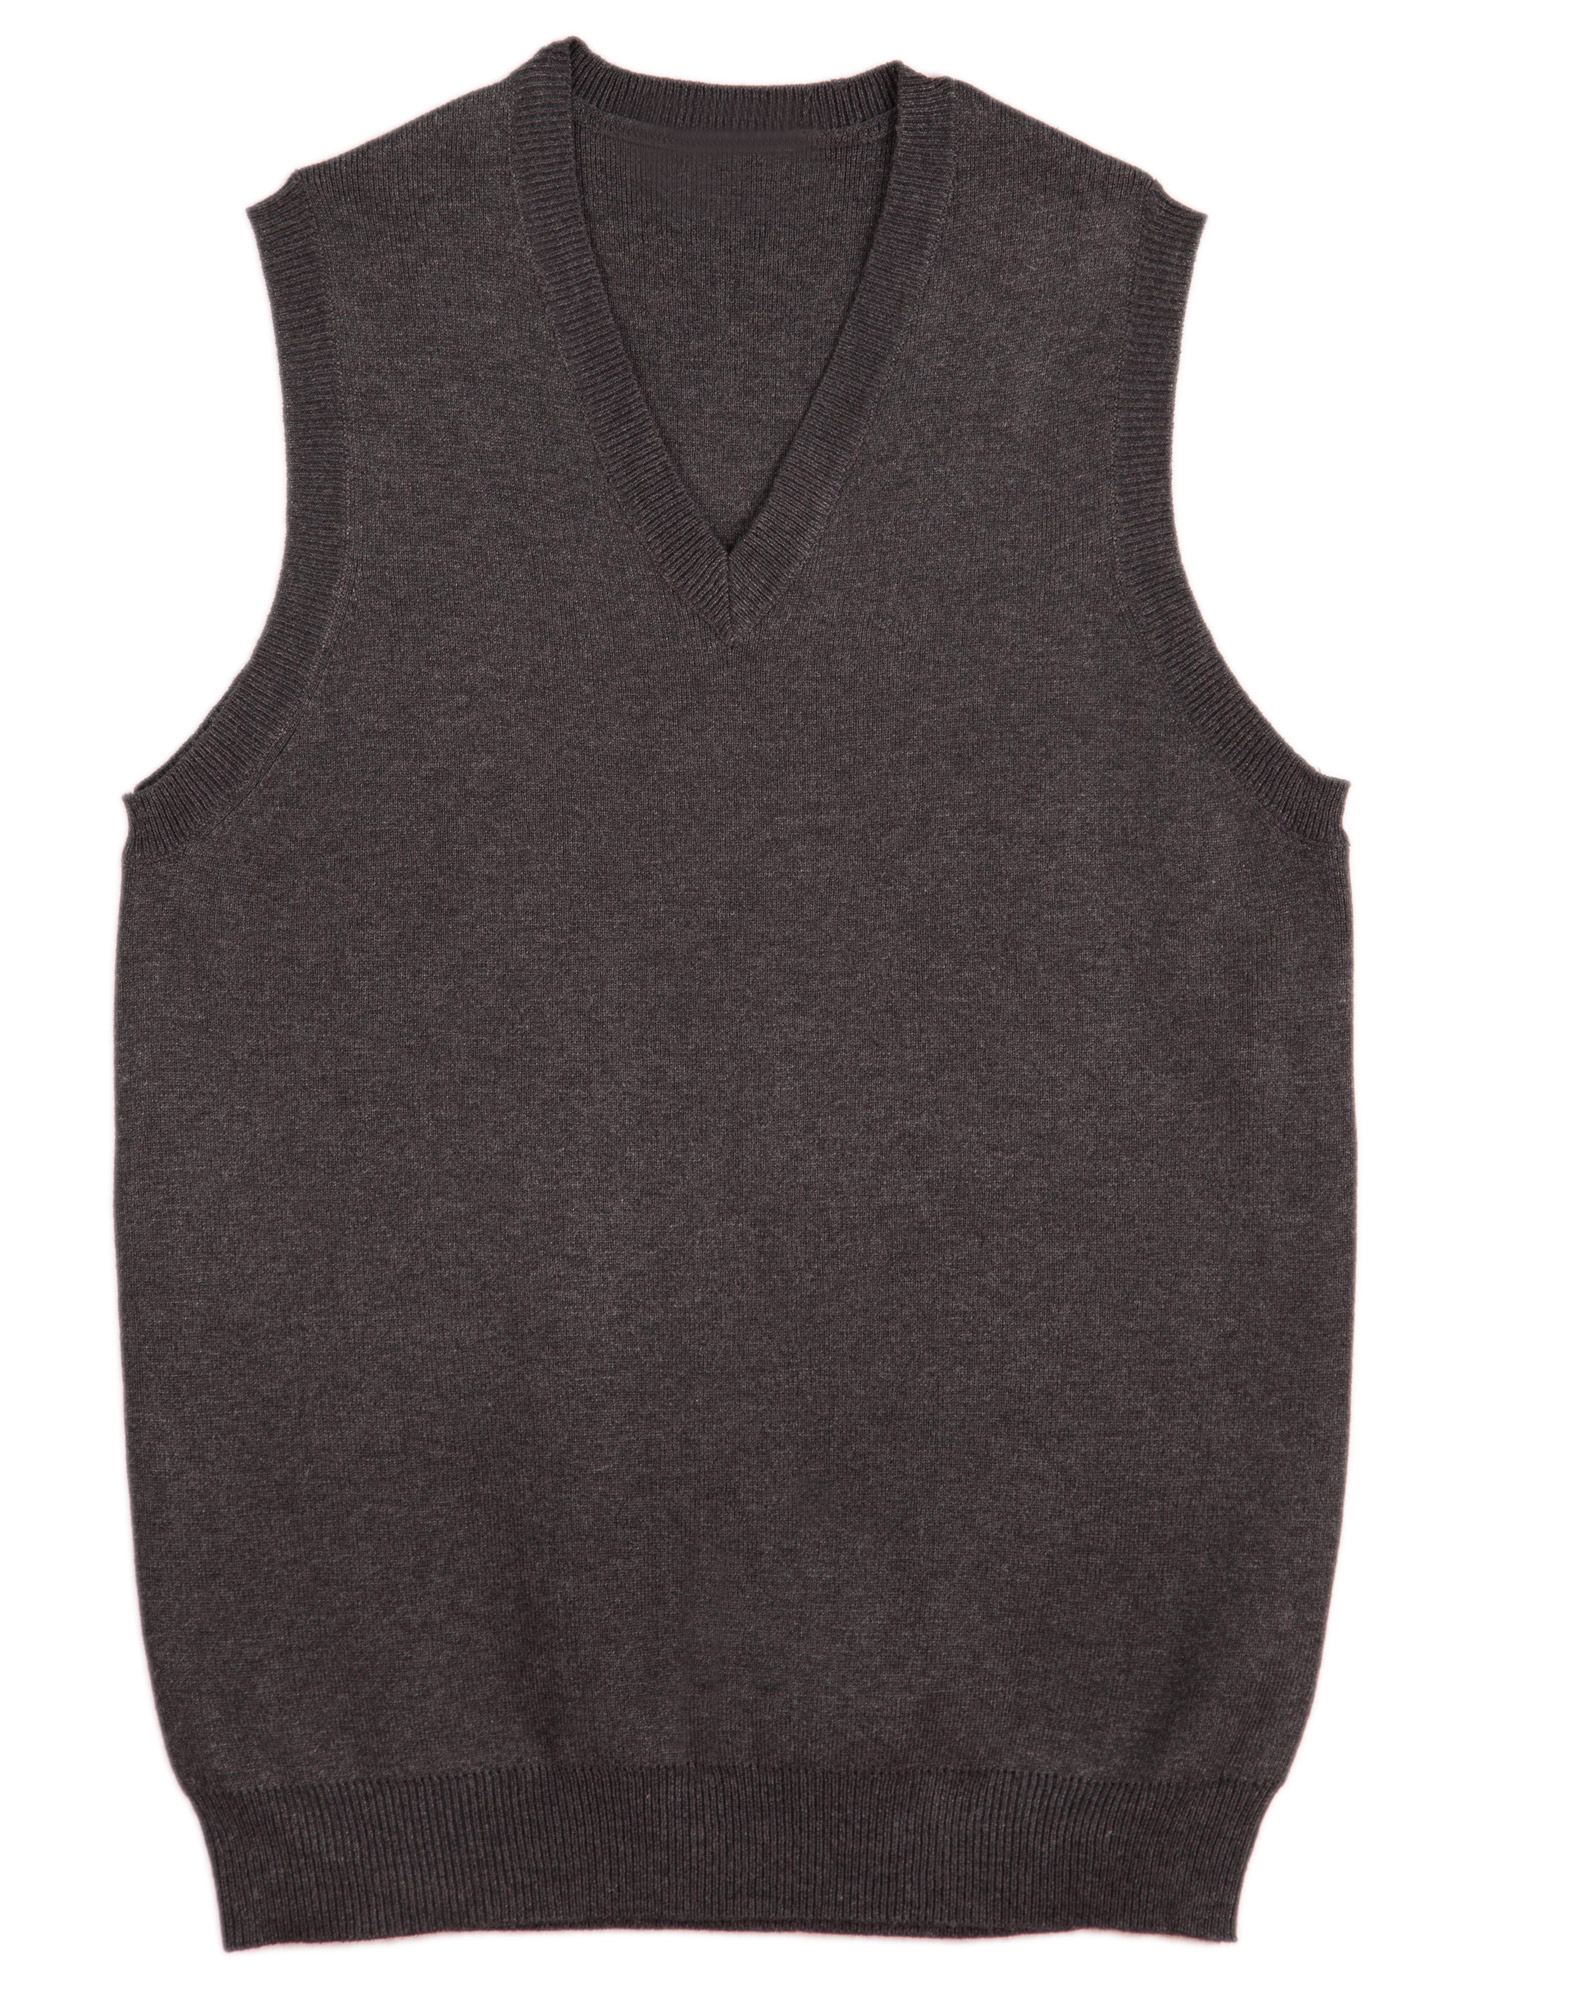 Women's Knitwear Vest - Charcoal - Uniform Edit